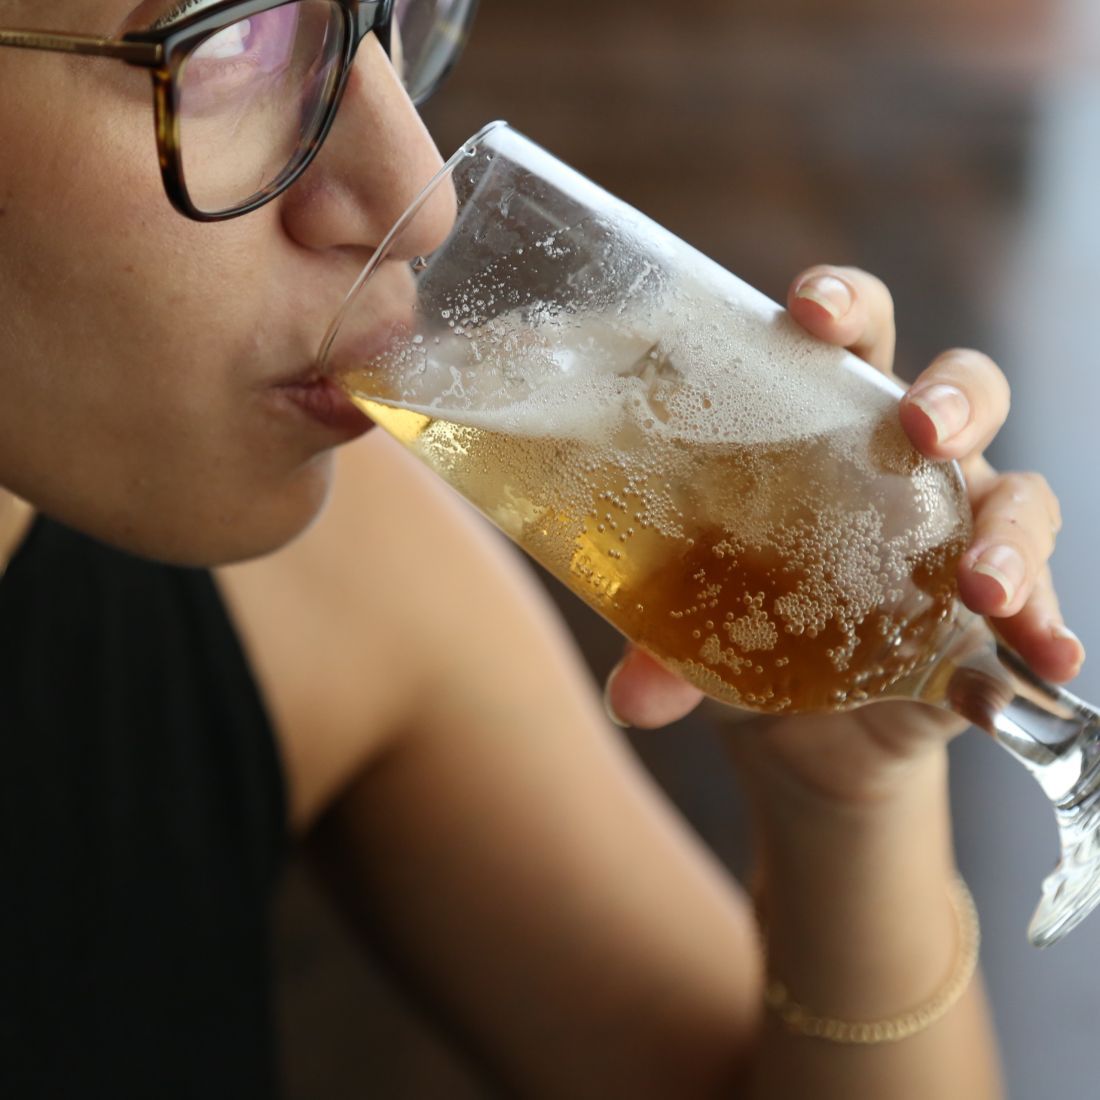 ולסיום, נגביה את הכוסות – כי לא משנה איזו בירה אוהבים, העיקר הוא ללגום ממנה בחברת הפרטנרים-לשתייה הכי טובים. 